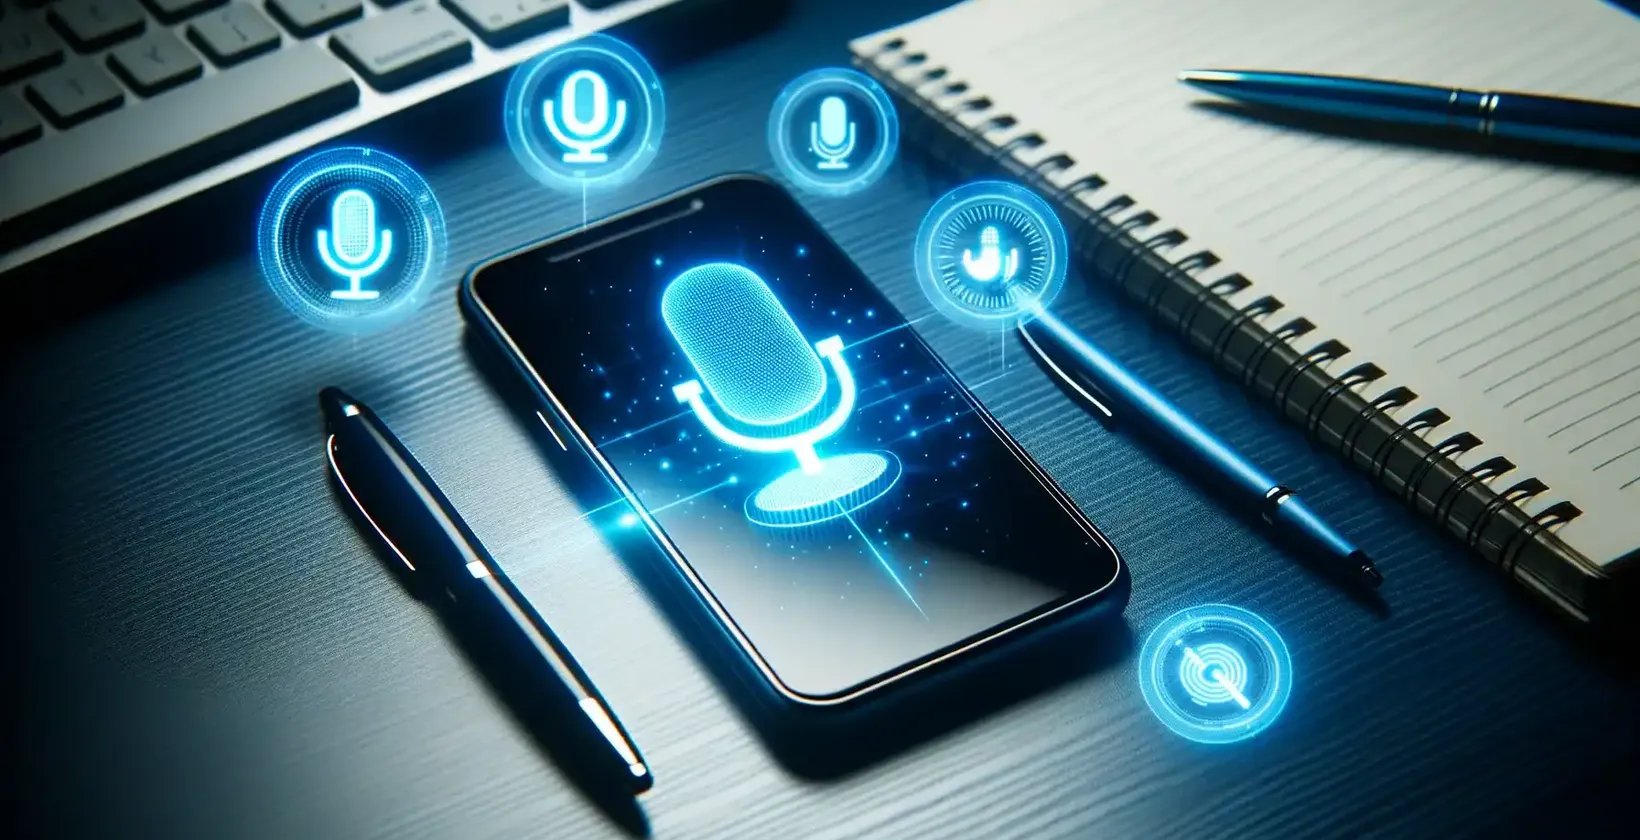 Aggiunta di testo a video su dispositivi Samsung illustrata da uno smartphone Samsung che visualizza simboli di comando vocale su una scrivania